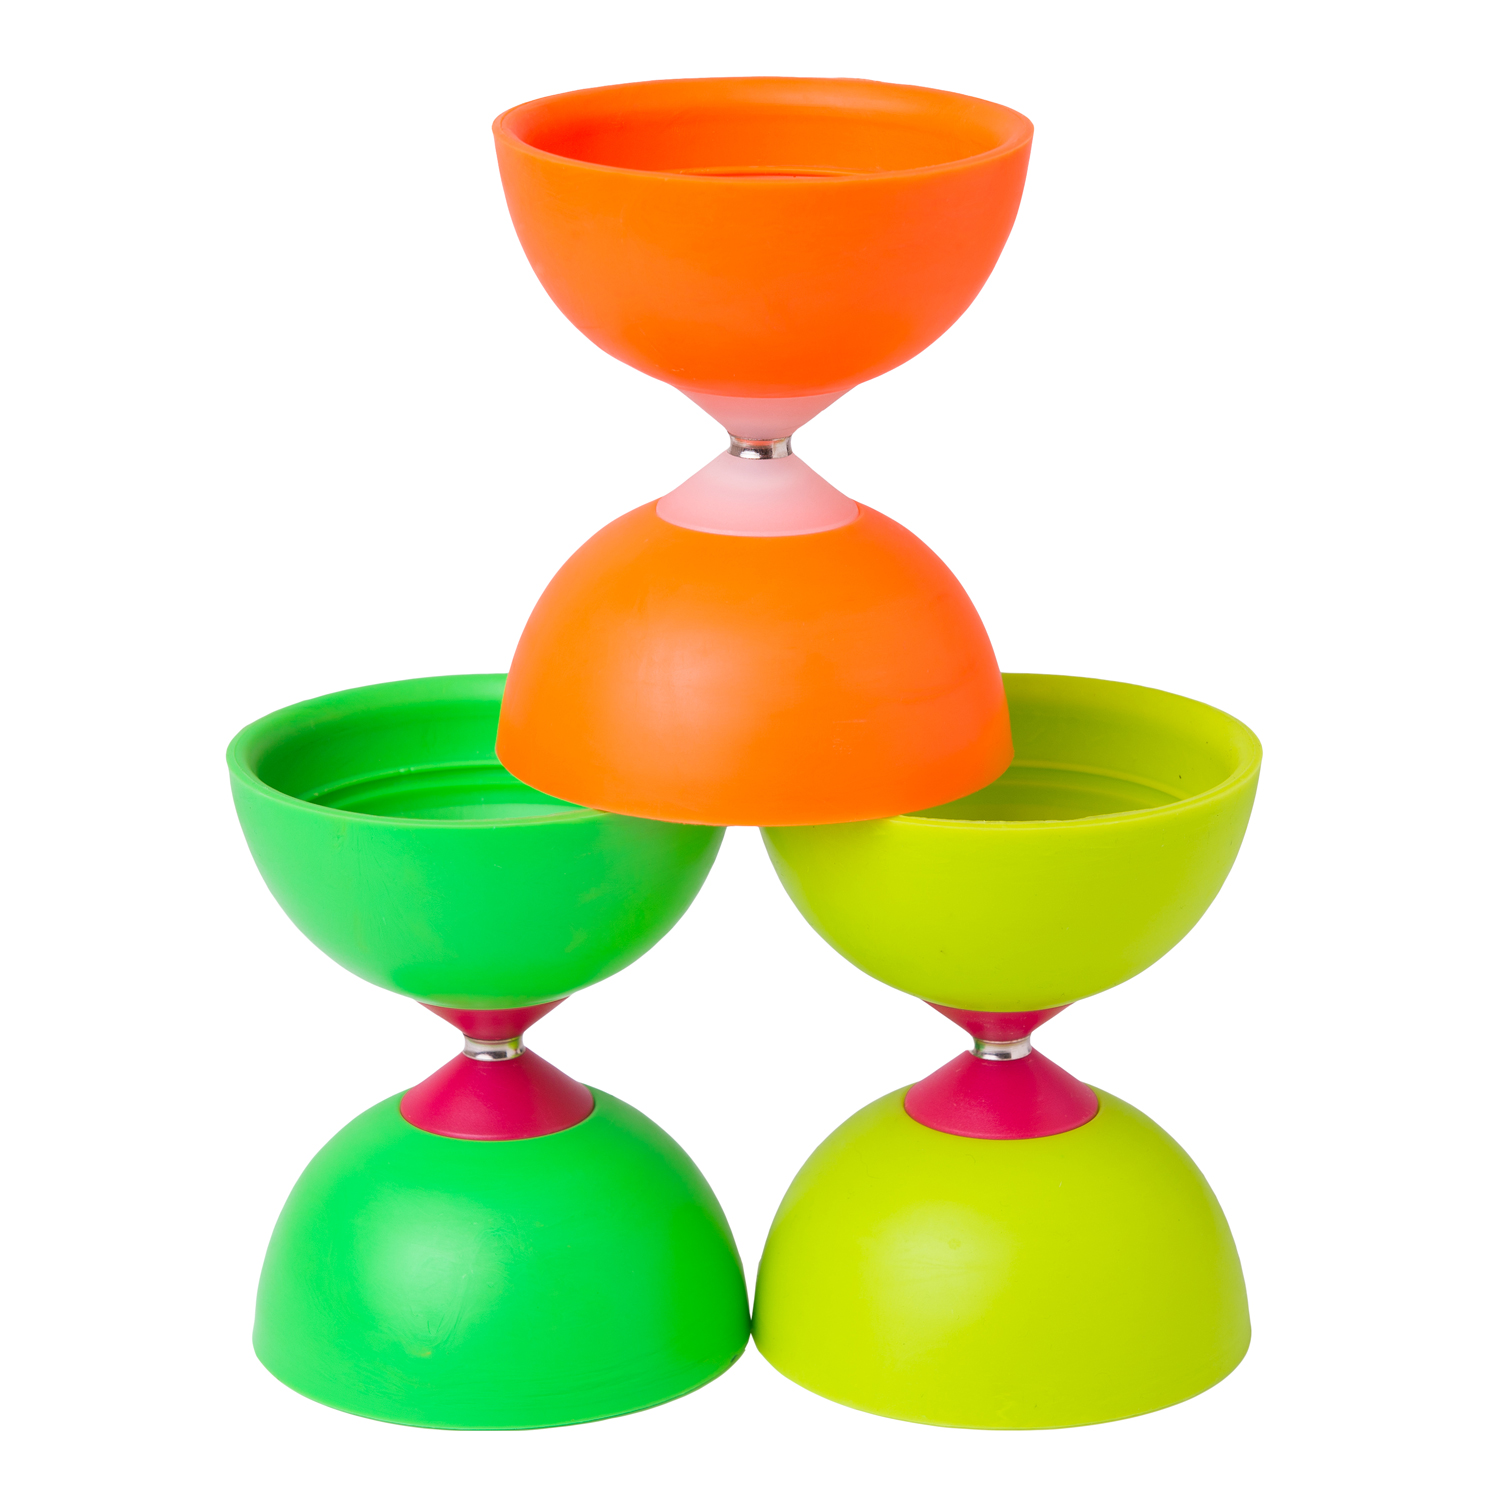 Buy to juggle: Diabolo | K8 Juggling online store